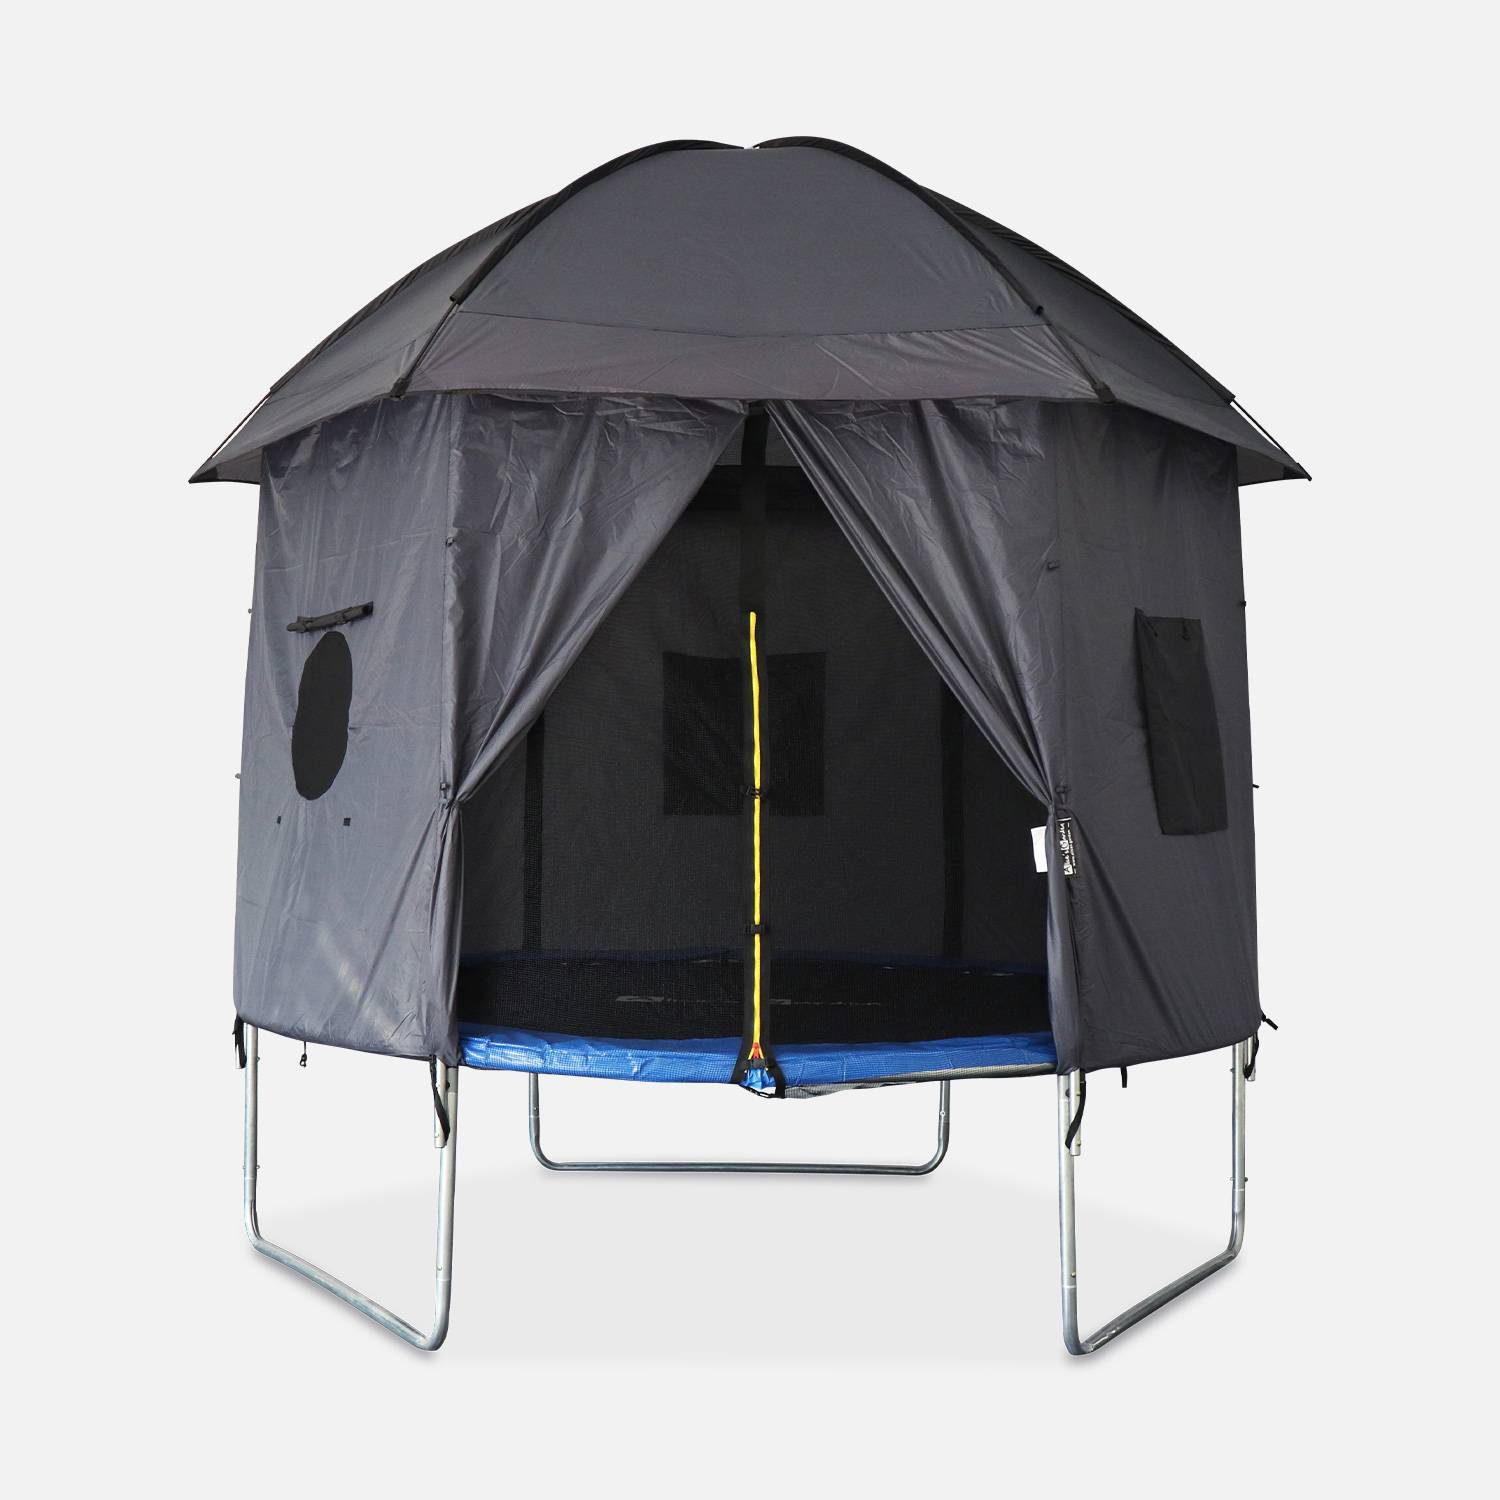 Tenda para trampolim, cabina, poliéster, tratamento UV, 1 porta, 3 janelas e saco de transporte Photo2